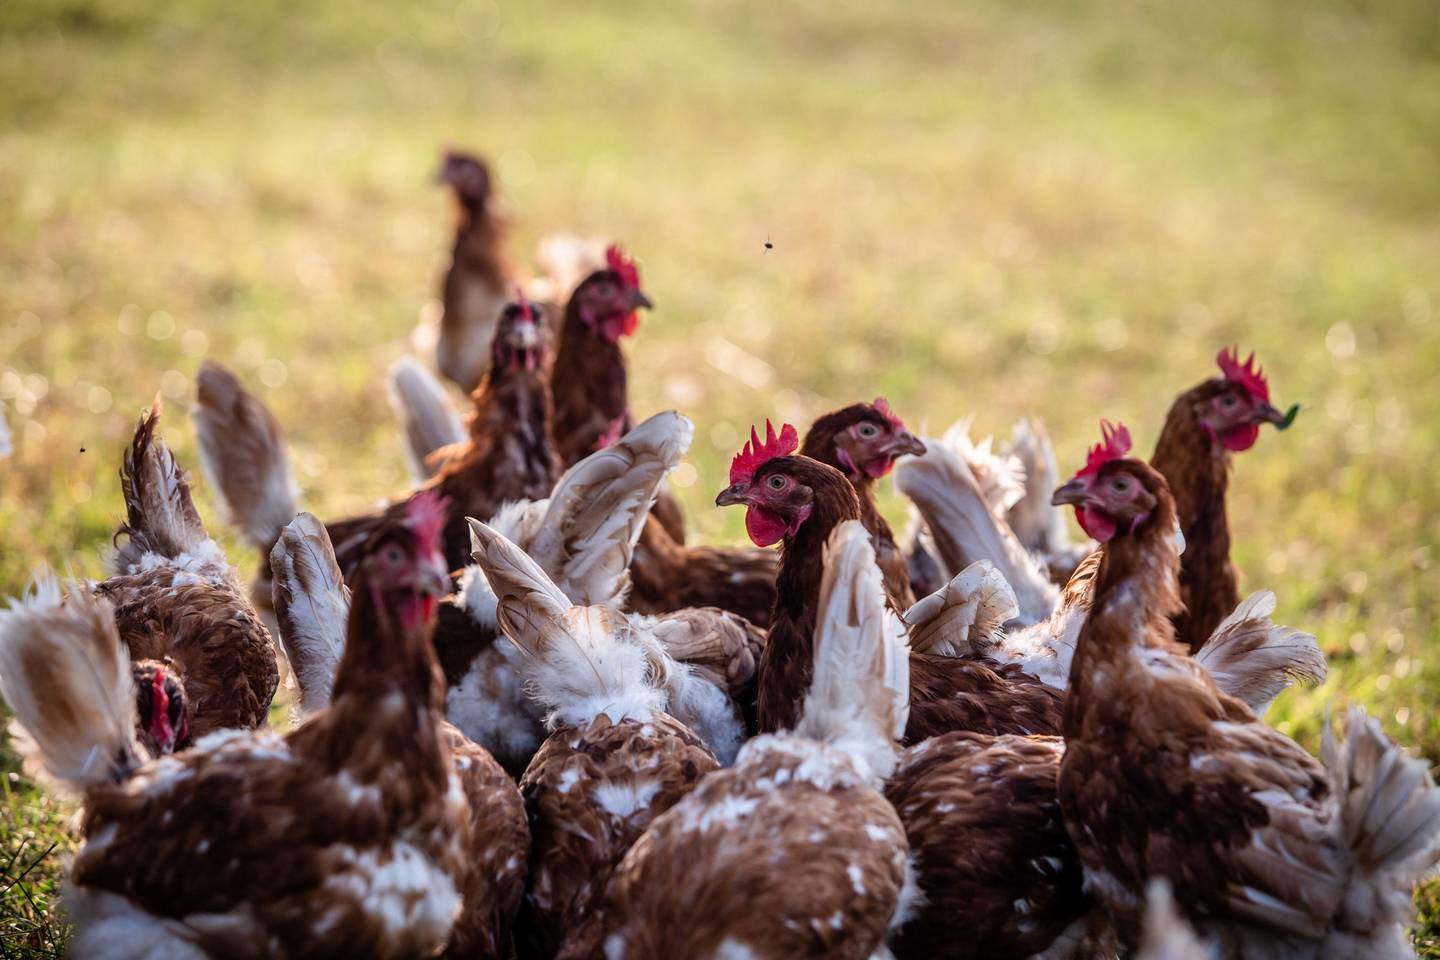 La transmisión de la influenza aviar en humanos es bajo, pero los trabajadores de las granjas son los más propensos a contagiarse.dfd